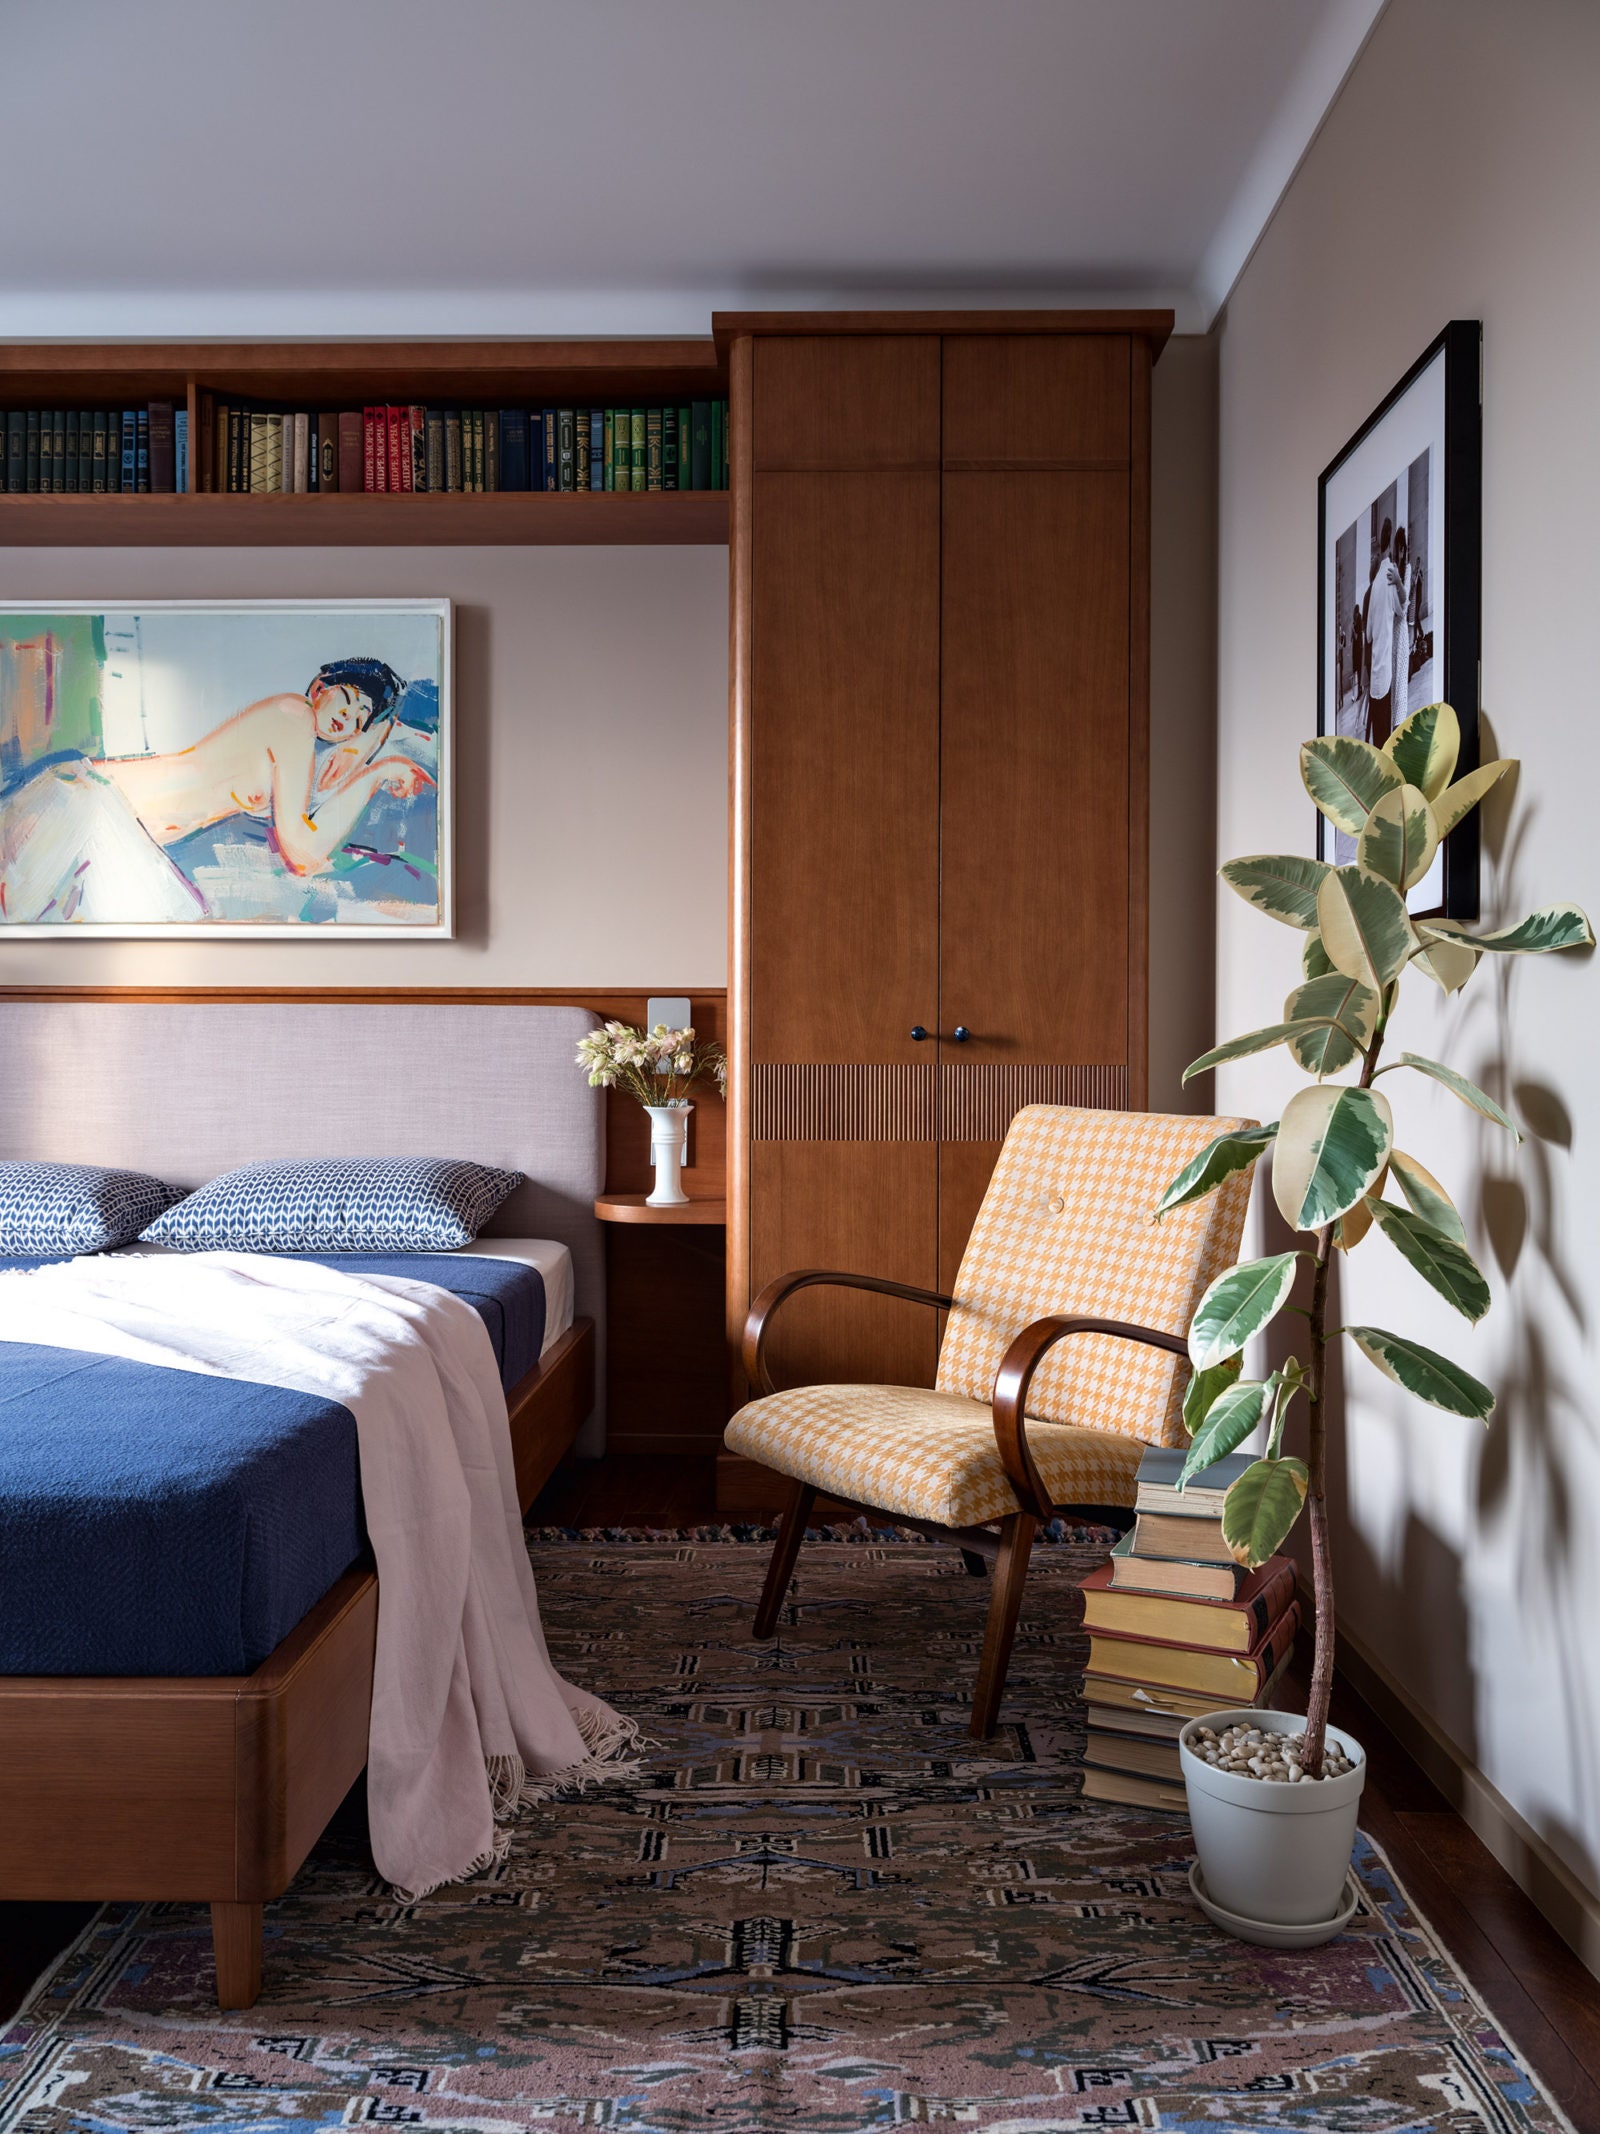 Спальня в квартире по проекту Натальи Юнг и Светланы Озеровой. Фото Евгений Кулибаба.